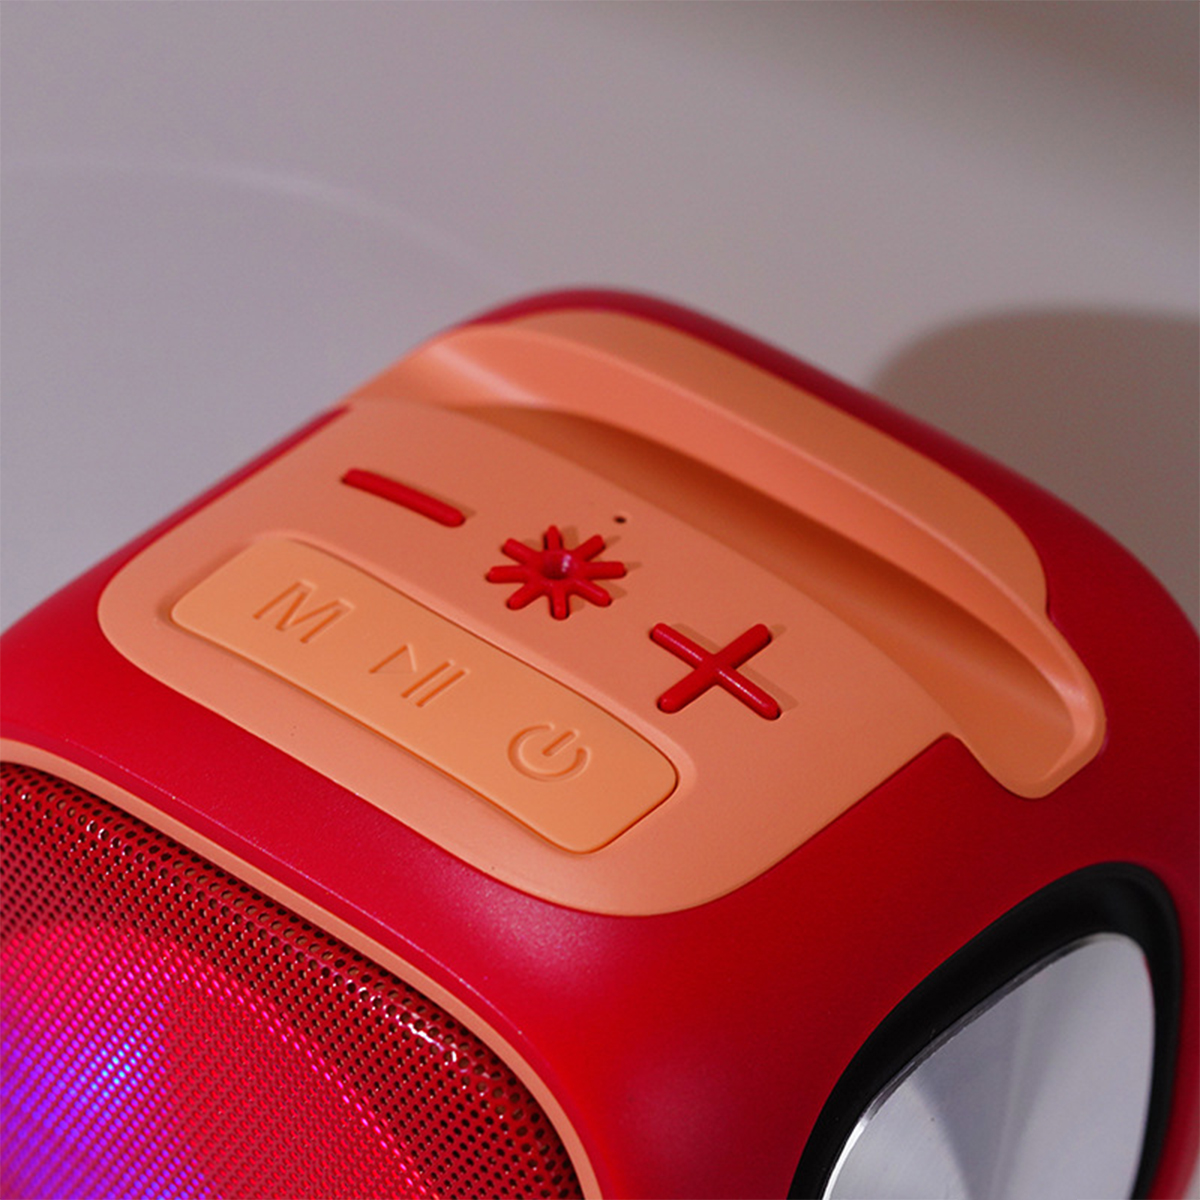 Bluetooth-Lautsprecher, Kleine Stereo TWS Stahlkanone RGB Licht Lautsprecher Radio Grün,orange Plug-In Bluetooth Wireless BRIGHTAKE Partner